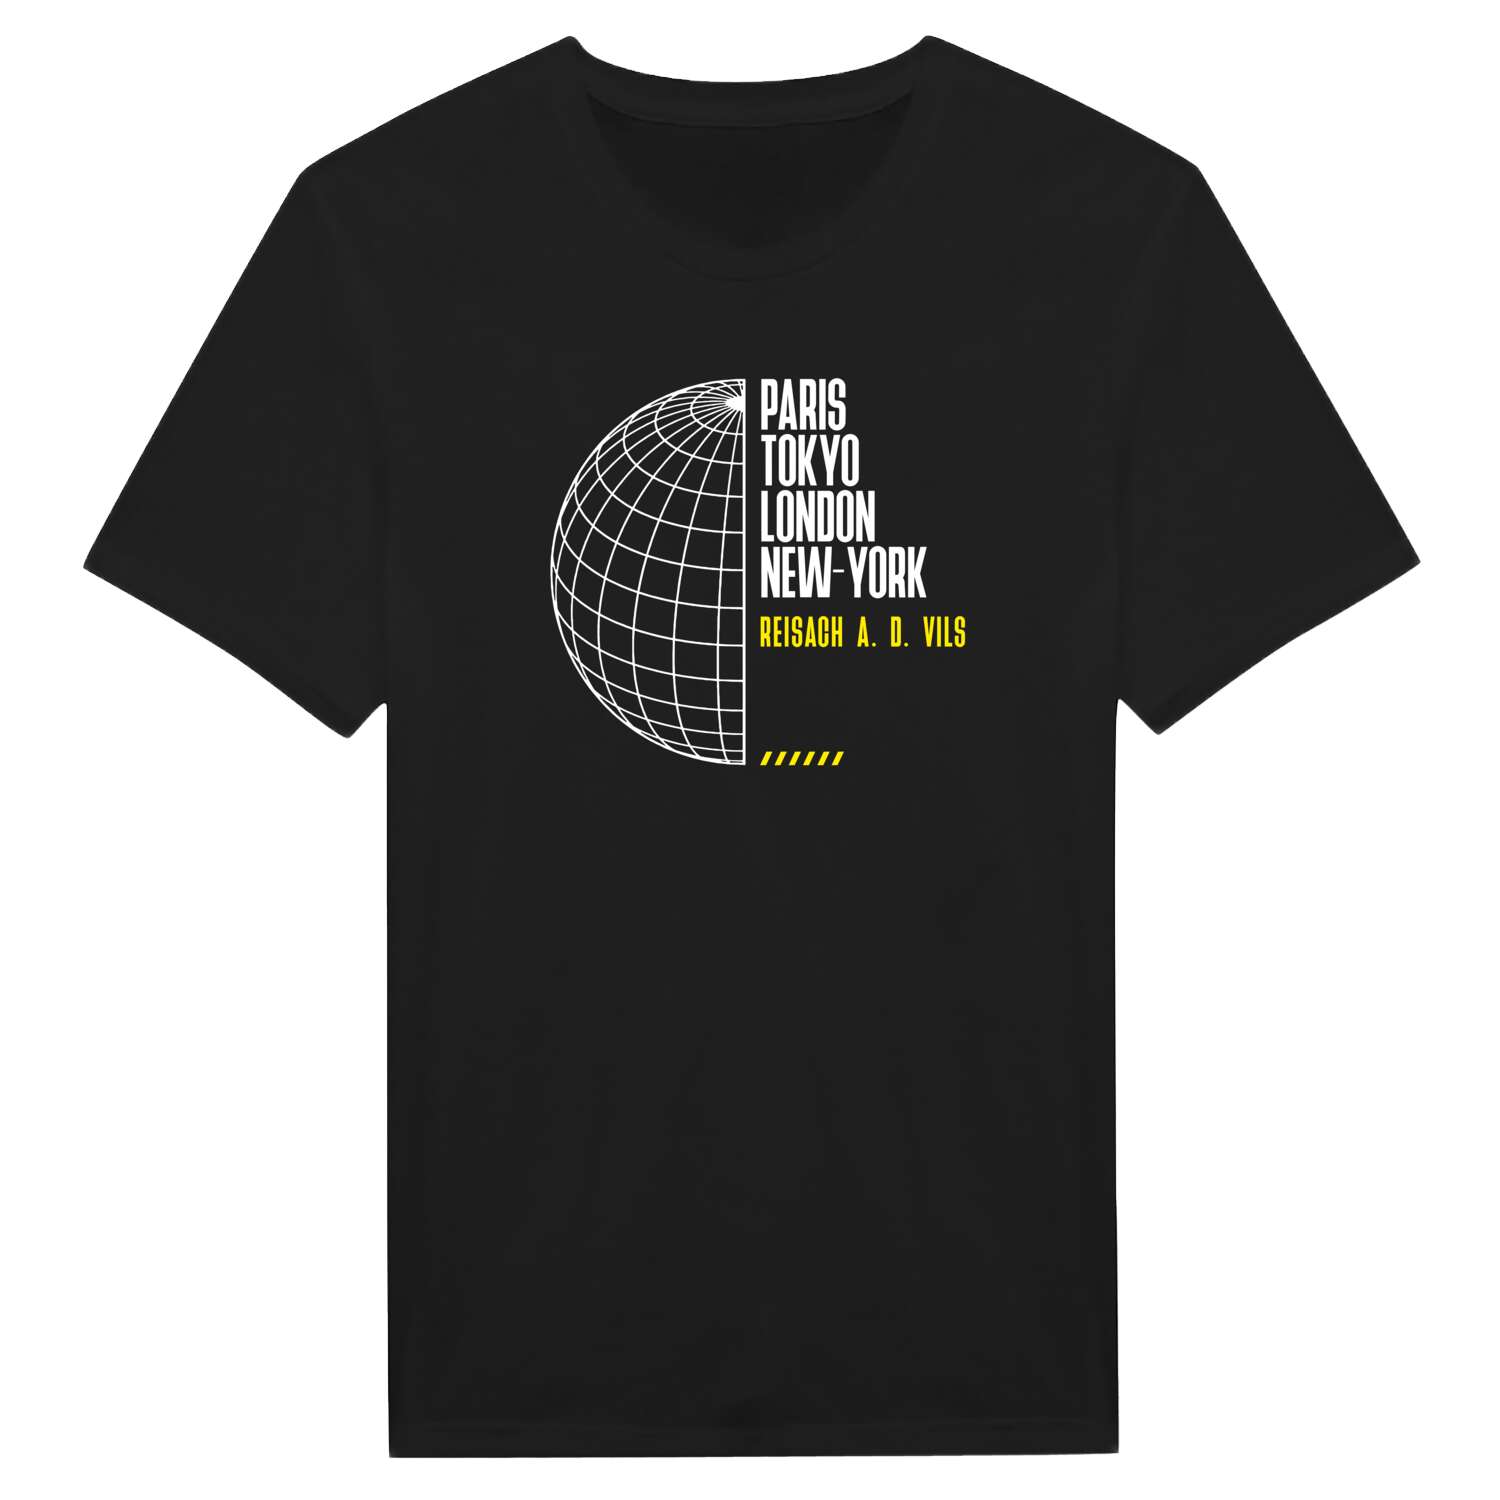 Reisach a. d. Vils T-Shirt »Paris Tokyo London«